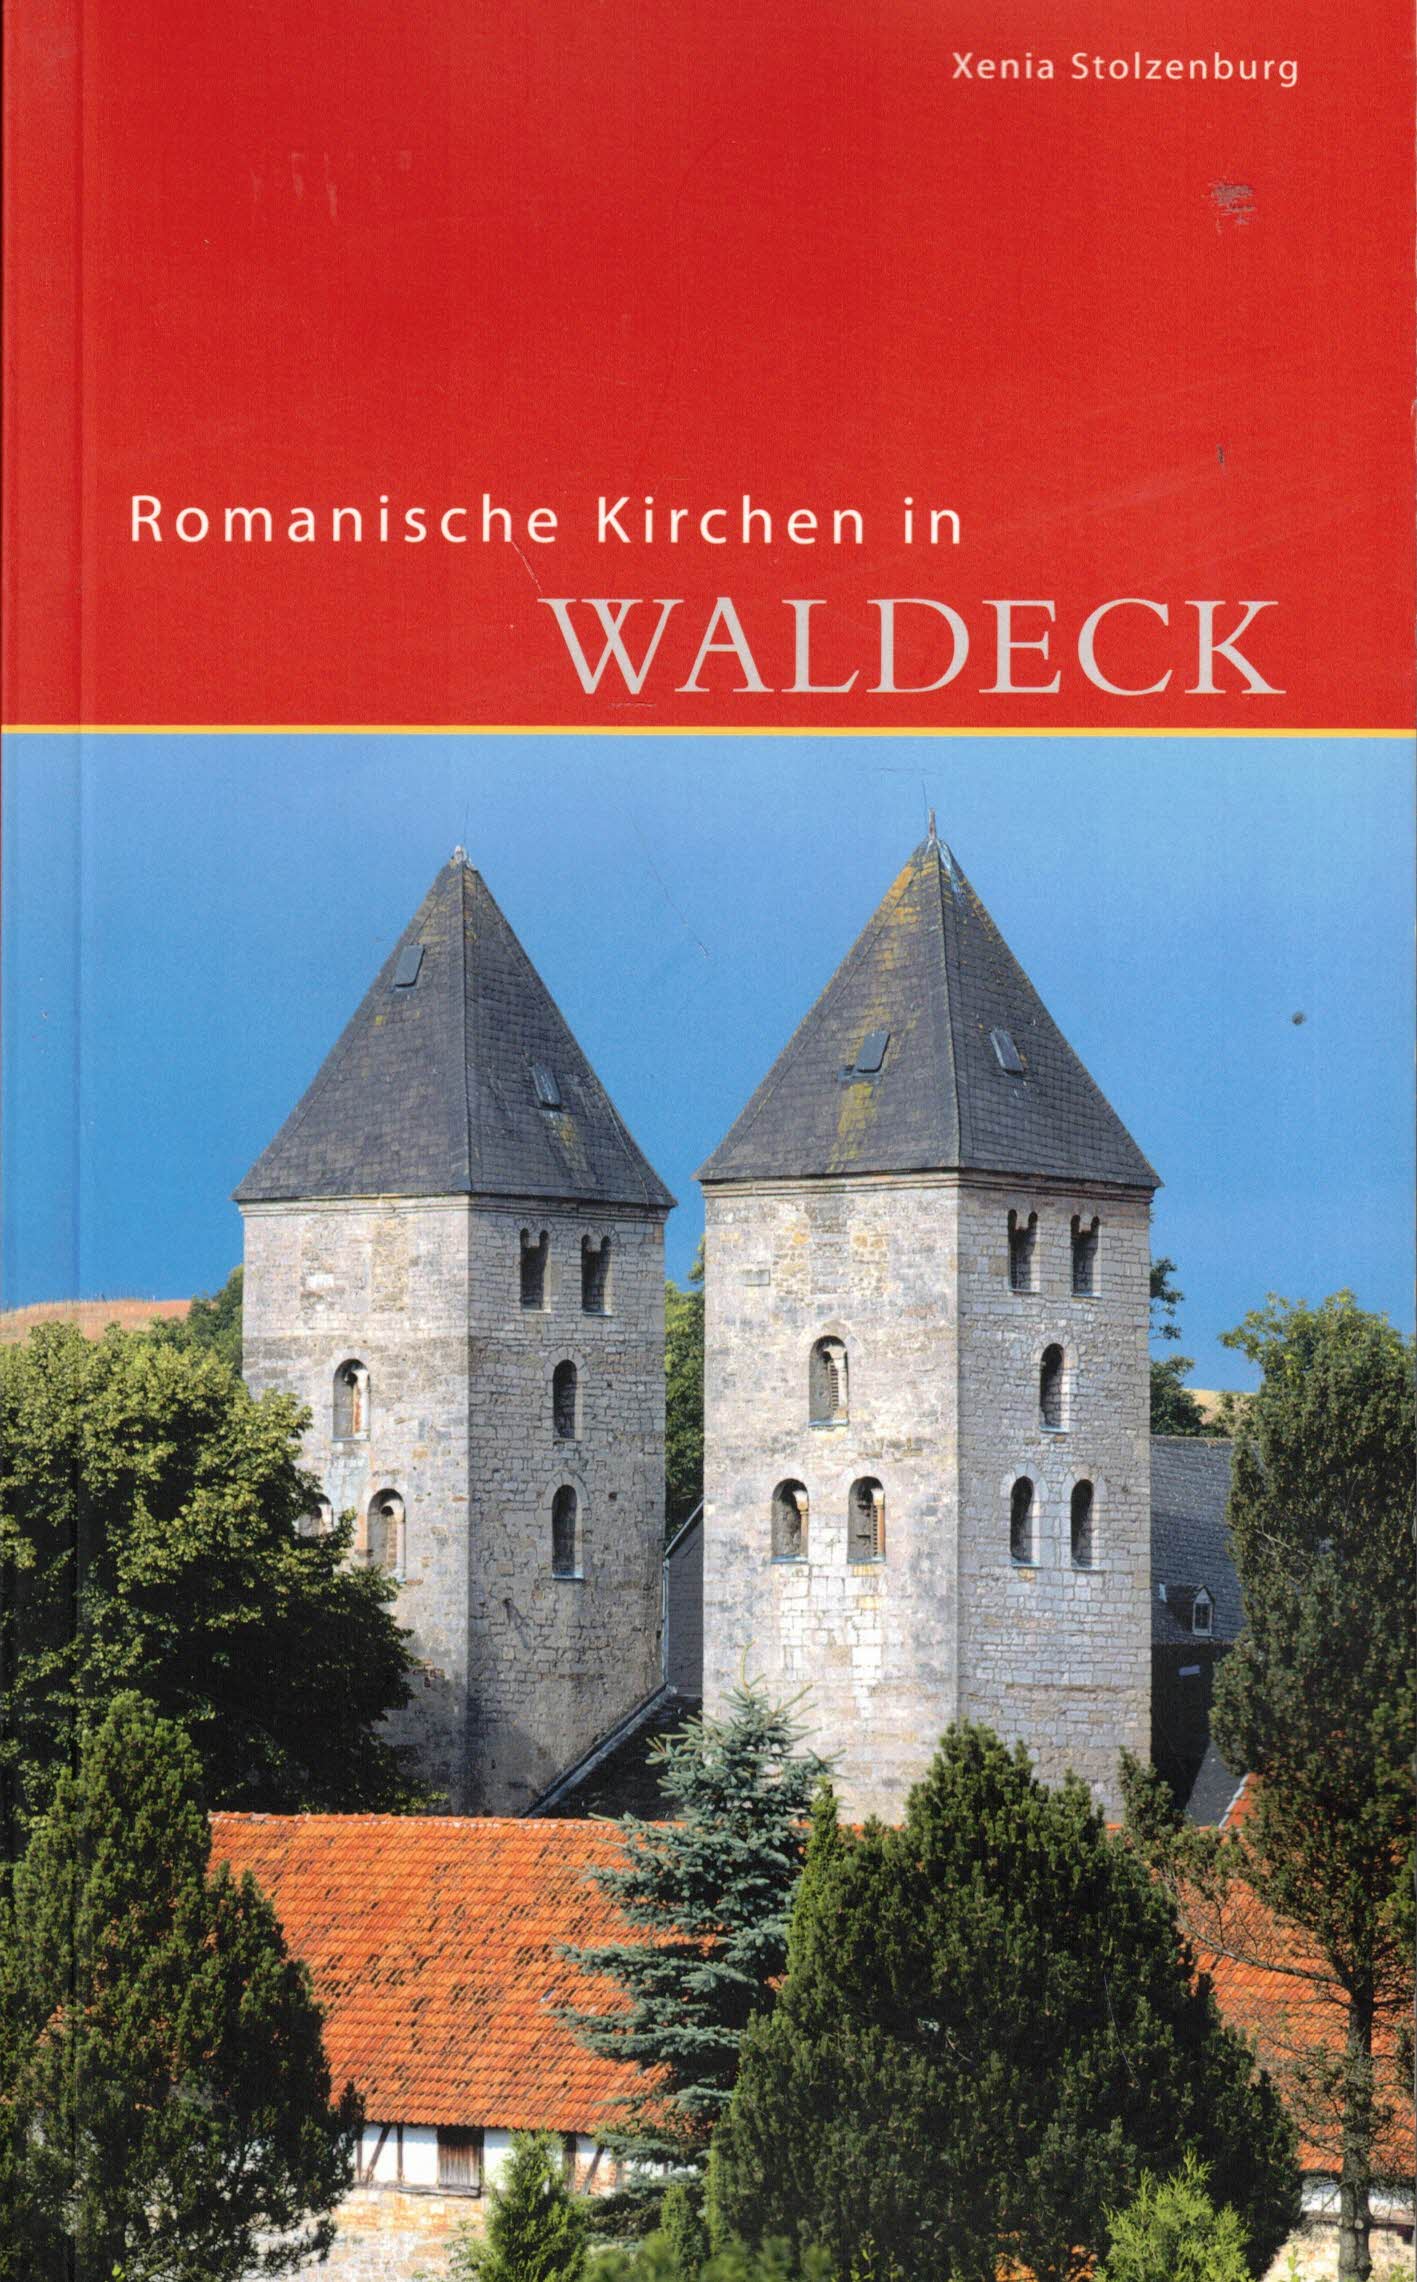 Romanische Kirchen in Waldeck (DKV-Edition) - Stolzenburg, Xenia